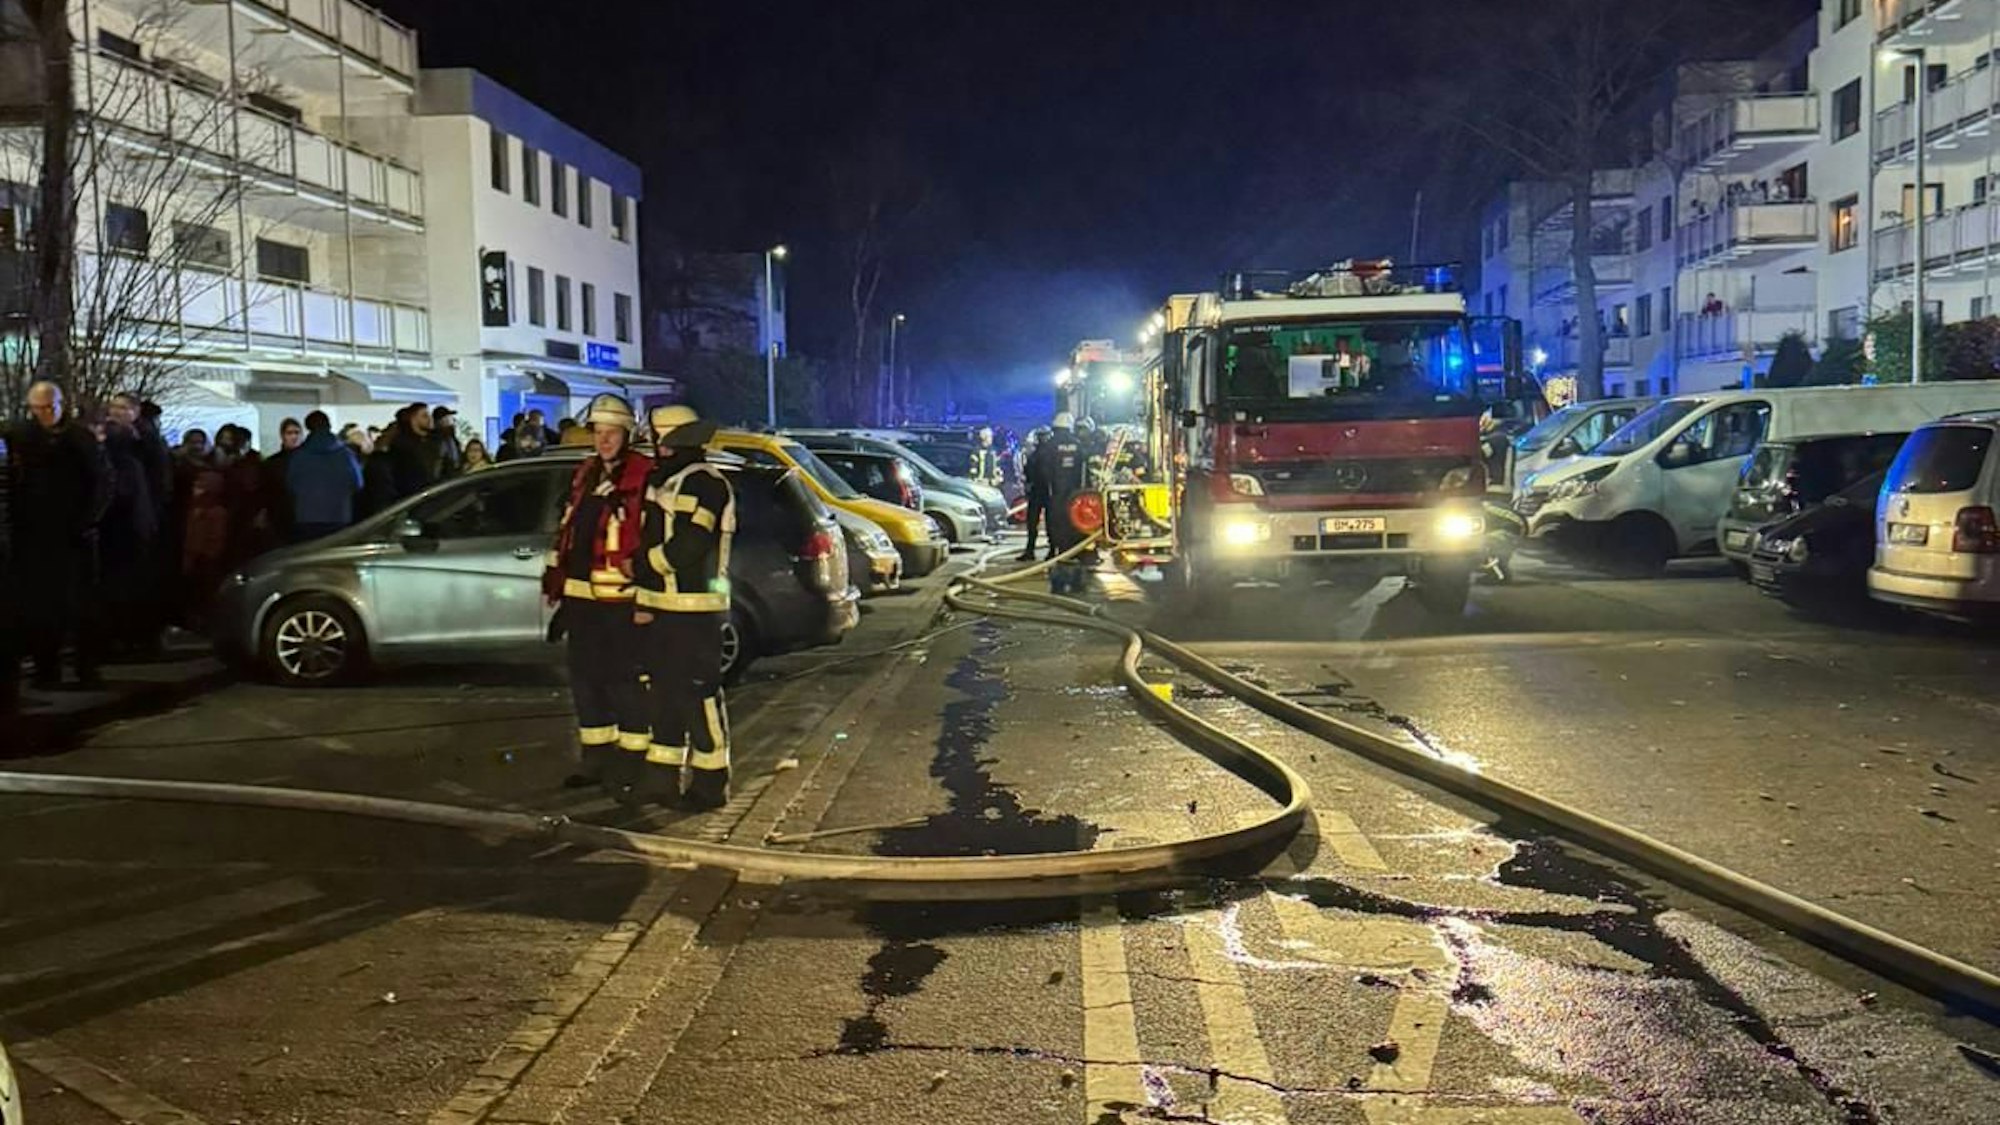 Ein Feuerwehrfahrzeug steht in der Dunkelheit auf einer Straße zwischen Mehrfamilienhäusern, Rettungskräfte und eine Menschengruppe sind zu sehen.